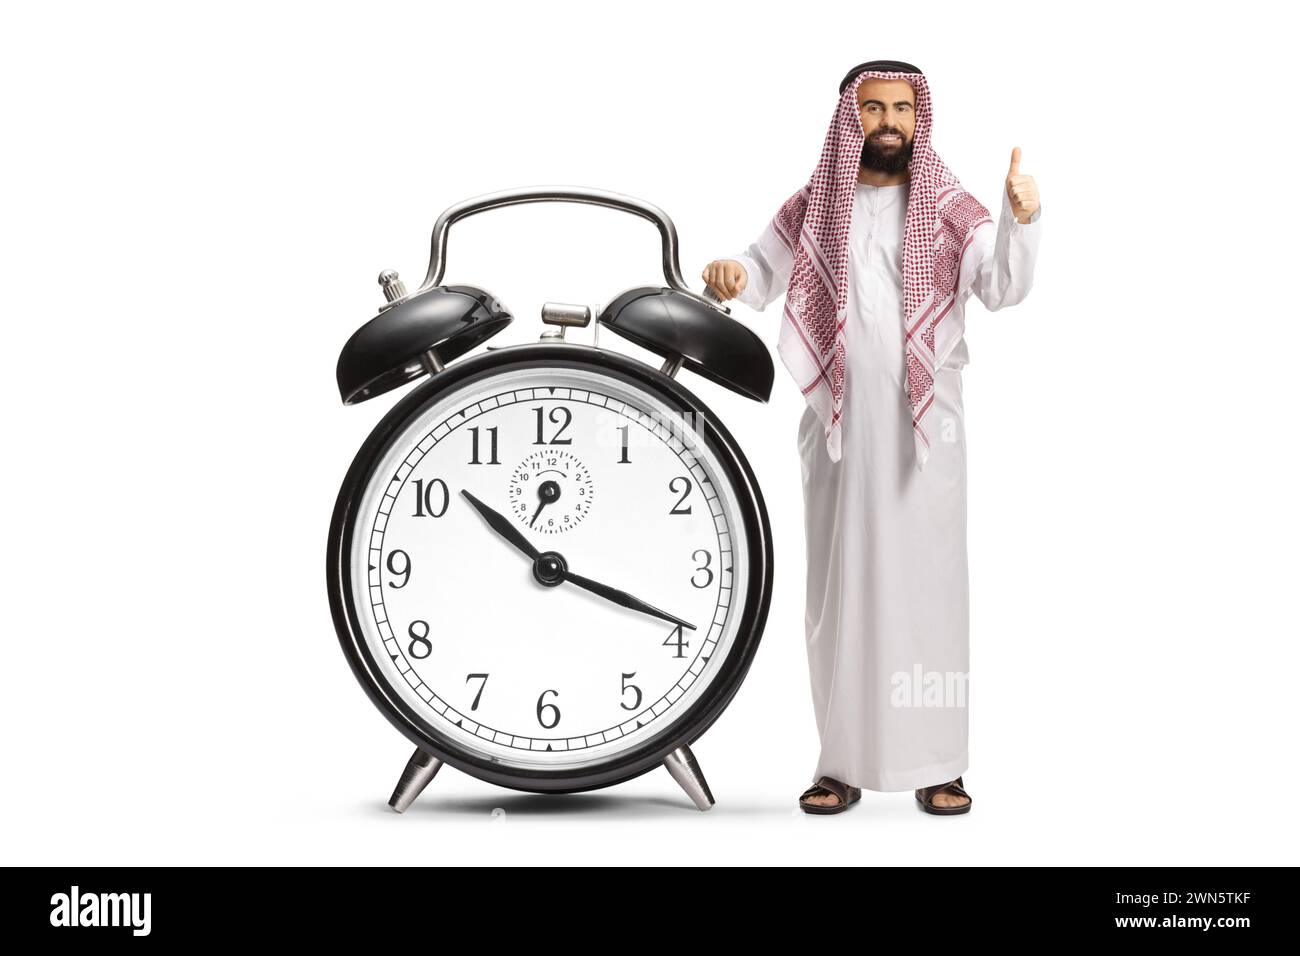 Uomo arabo saudita in abiti etnici con una grande sveglia con gesti su isolato su sfondo bianco Foto Stock